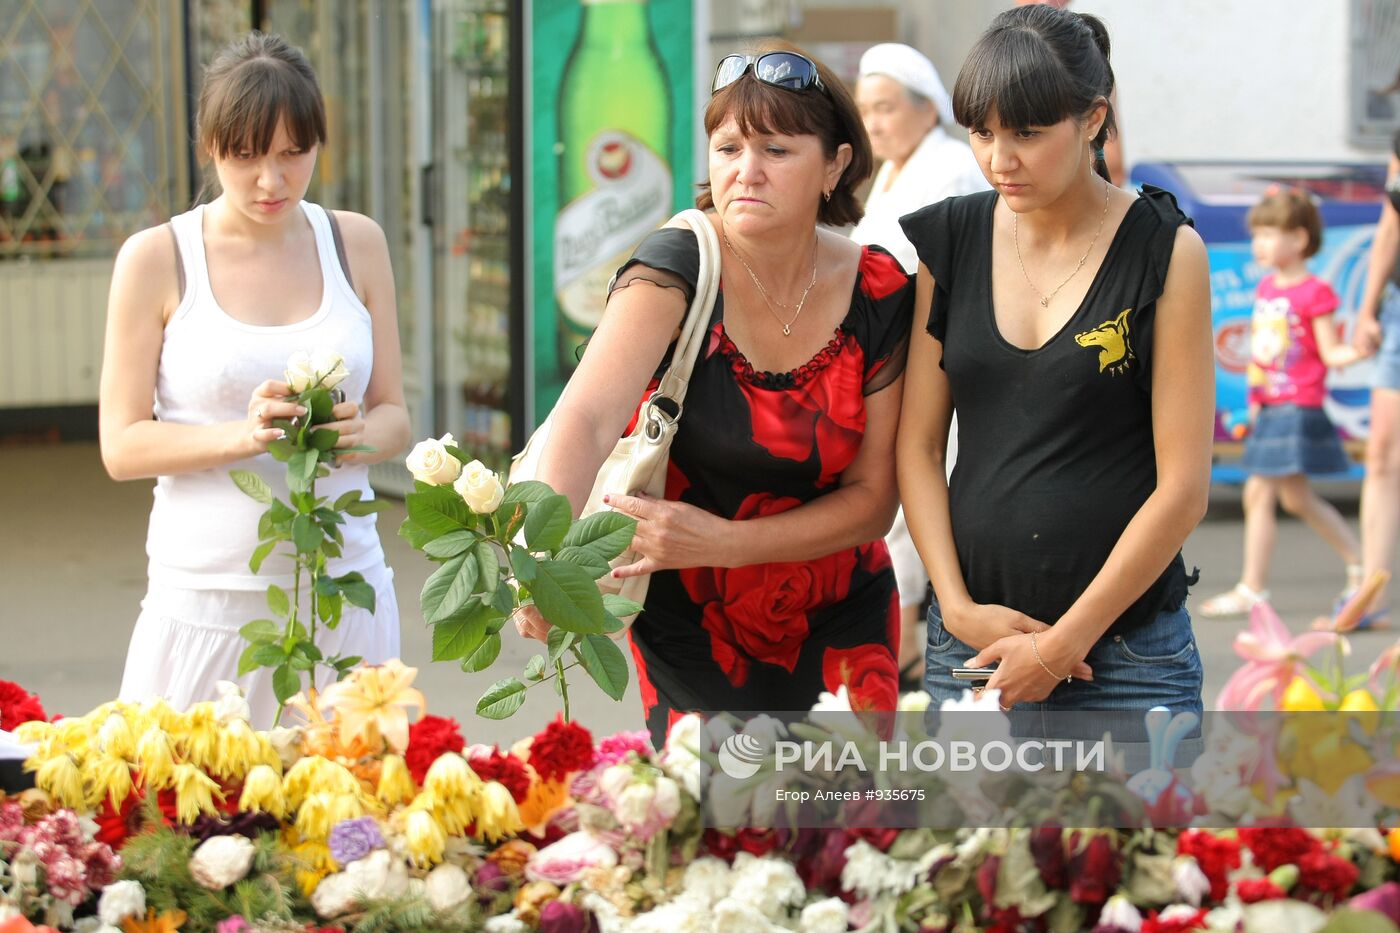 9 дней после гибели пассажиров на теплоходе "Булгария"